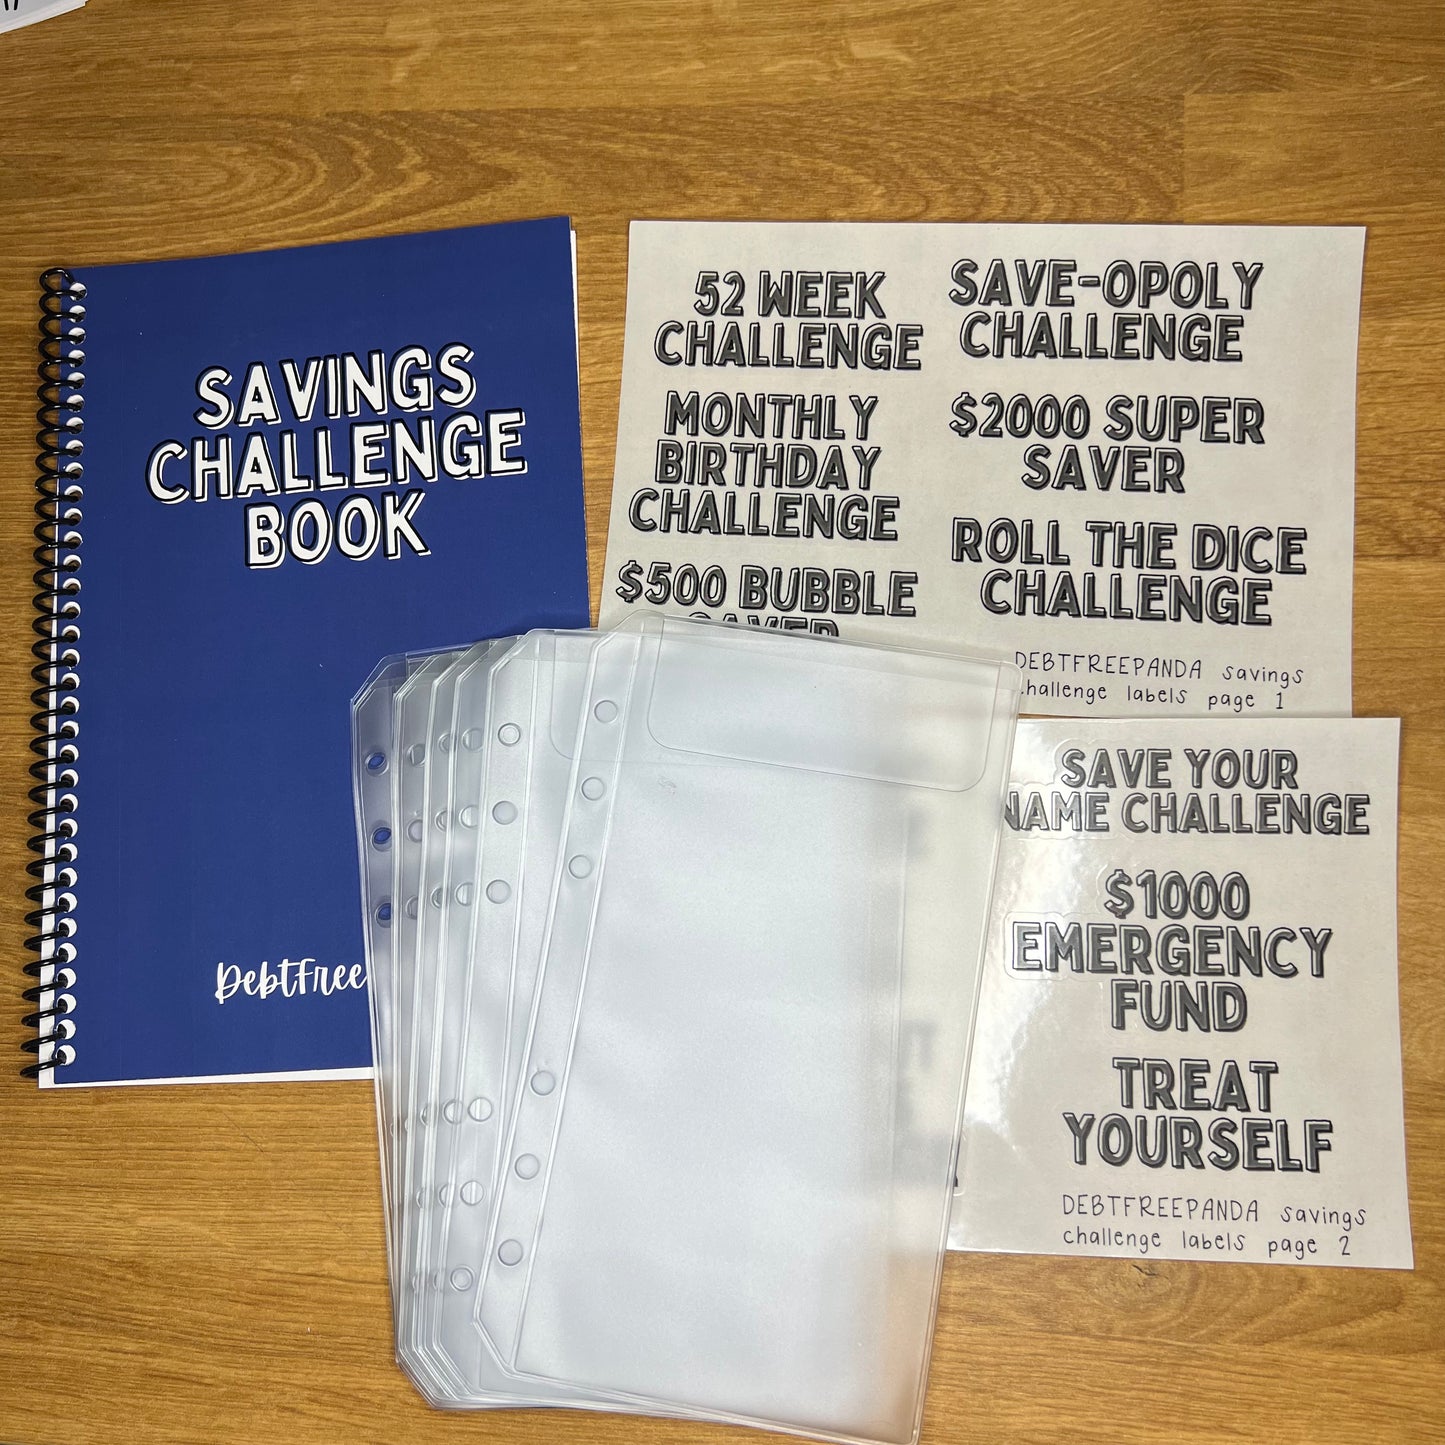 *Savings Challenge Book